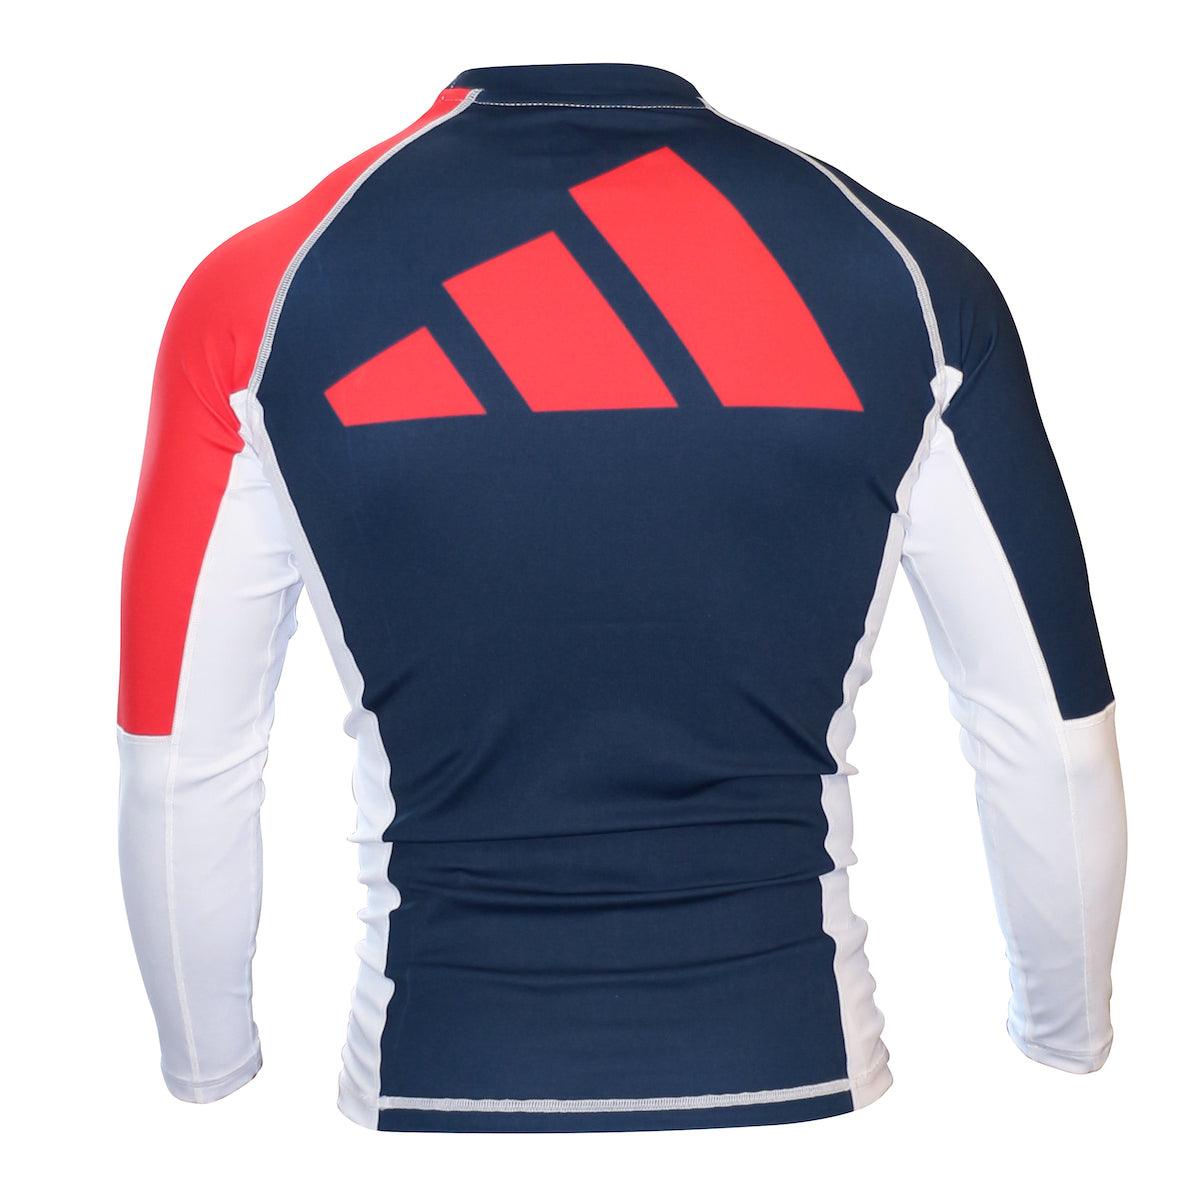 Rashguard Manches Longues Adidas - Bleu/Blanc/Rouge ADICSR02 - Boutique des Arts Martiaux et Sports de Combat